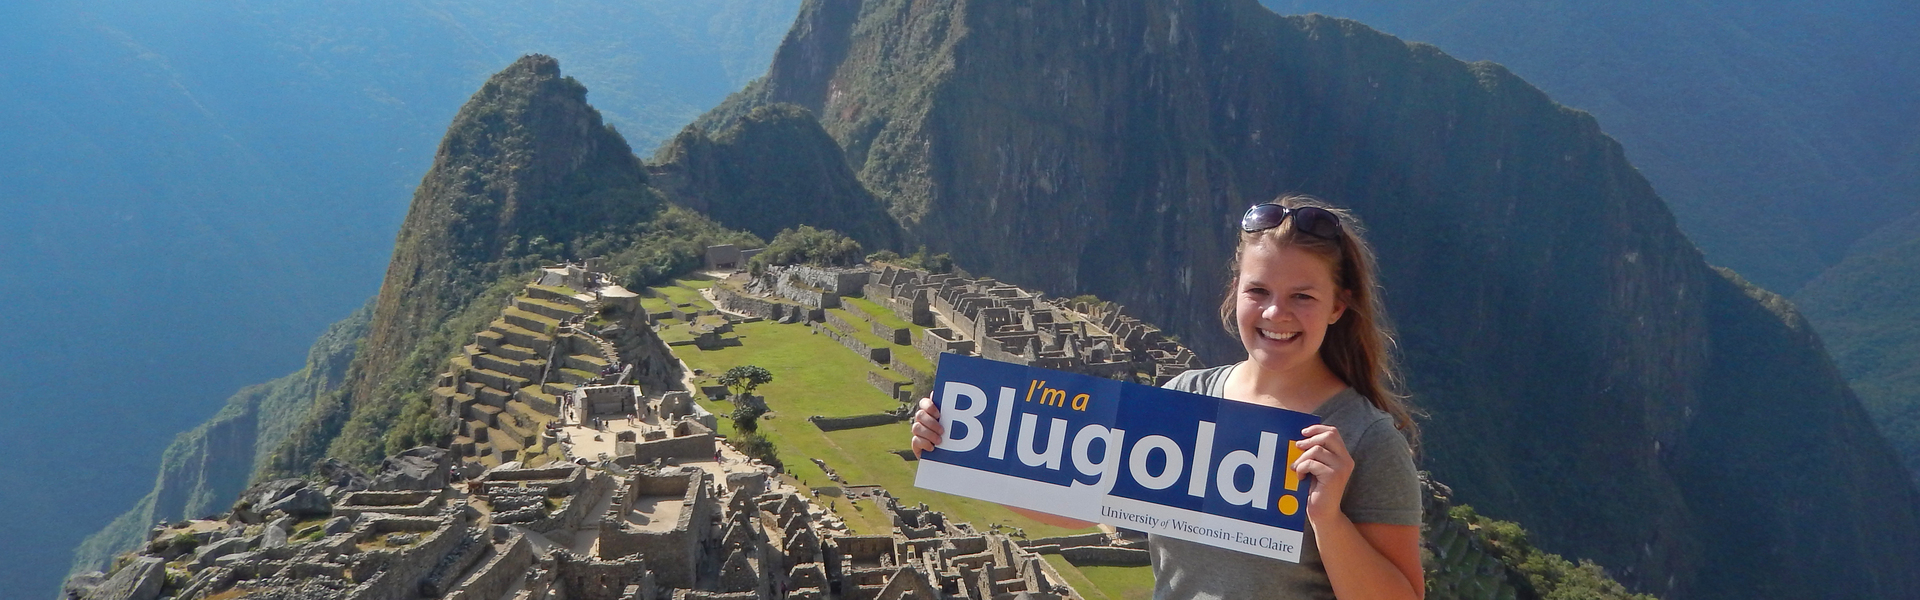 Student atop Machu Pichu in Peru holding I’m a Blugold sign.